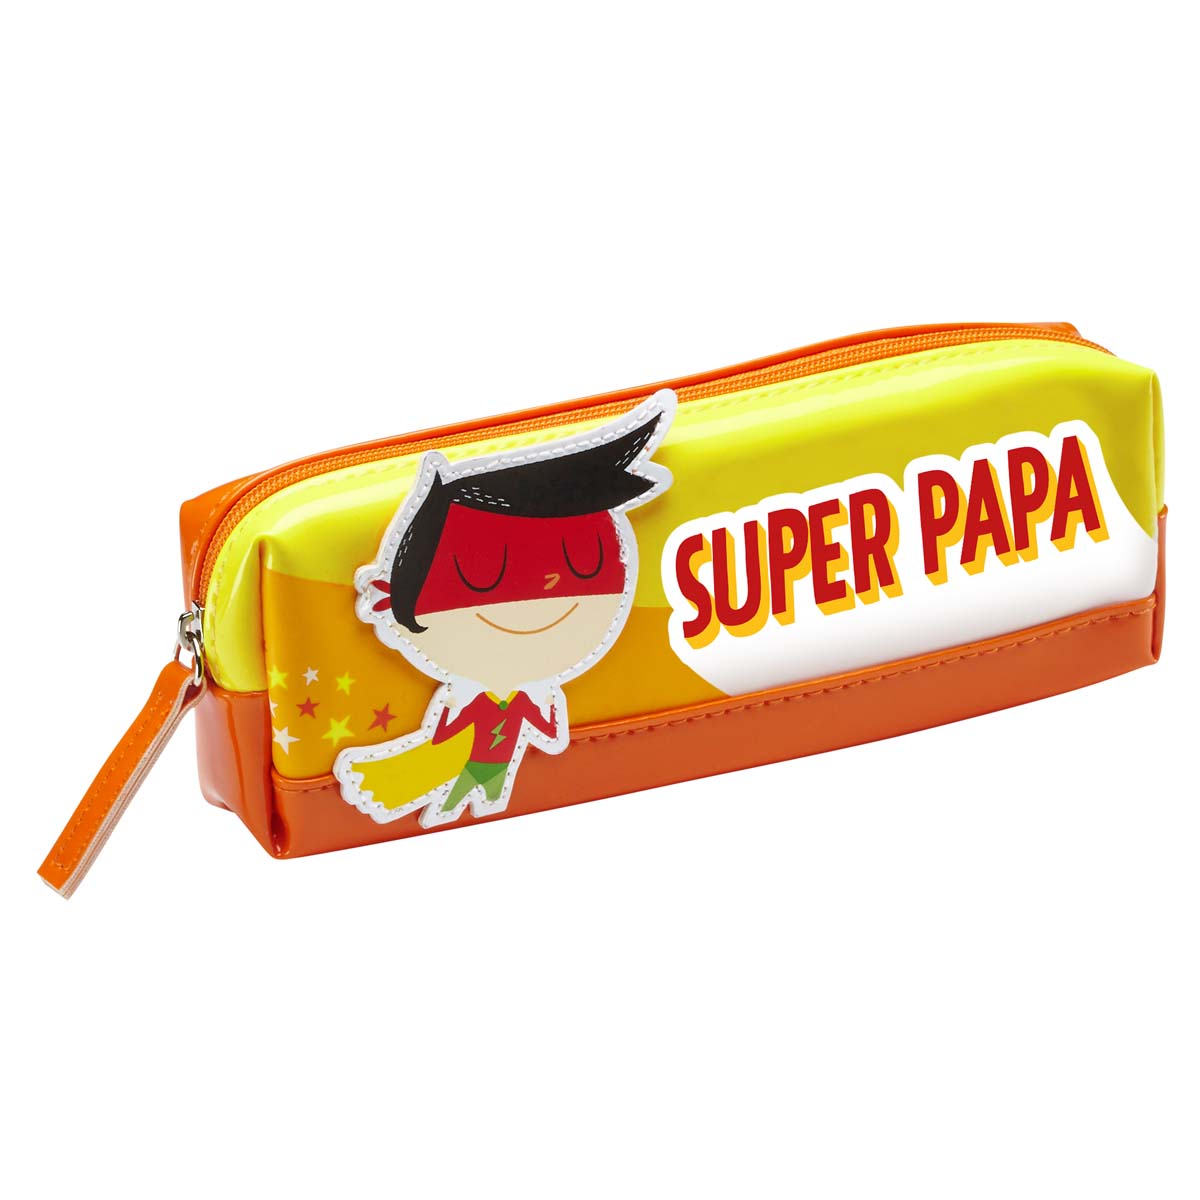 Super Dad children's kit